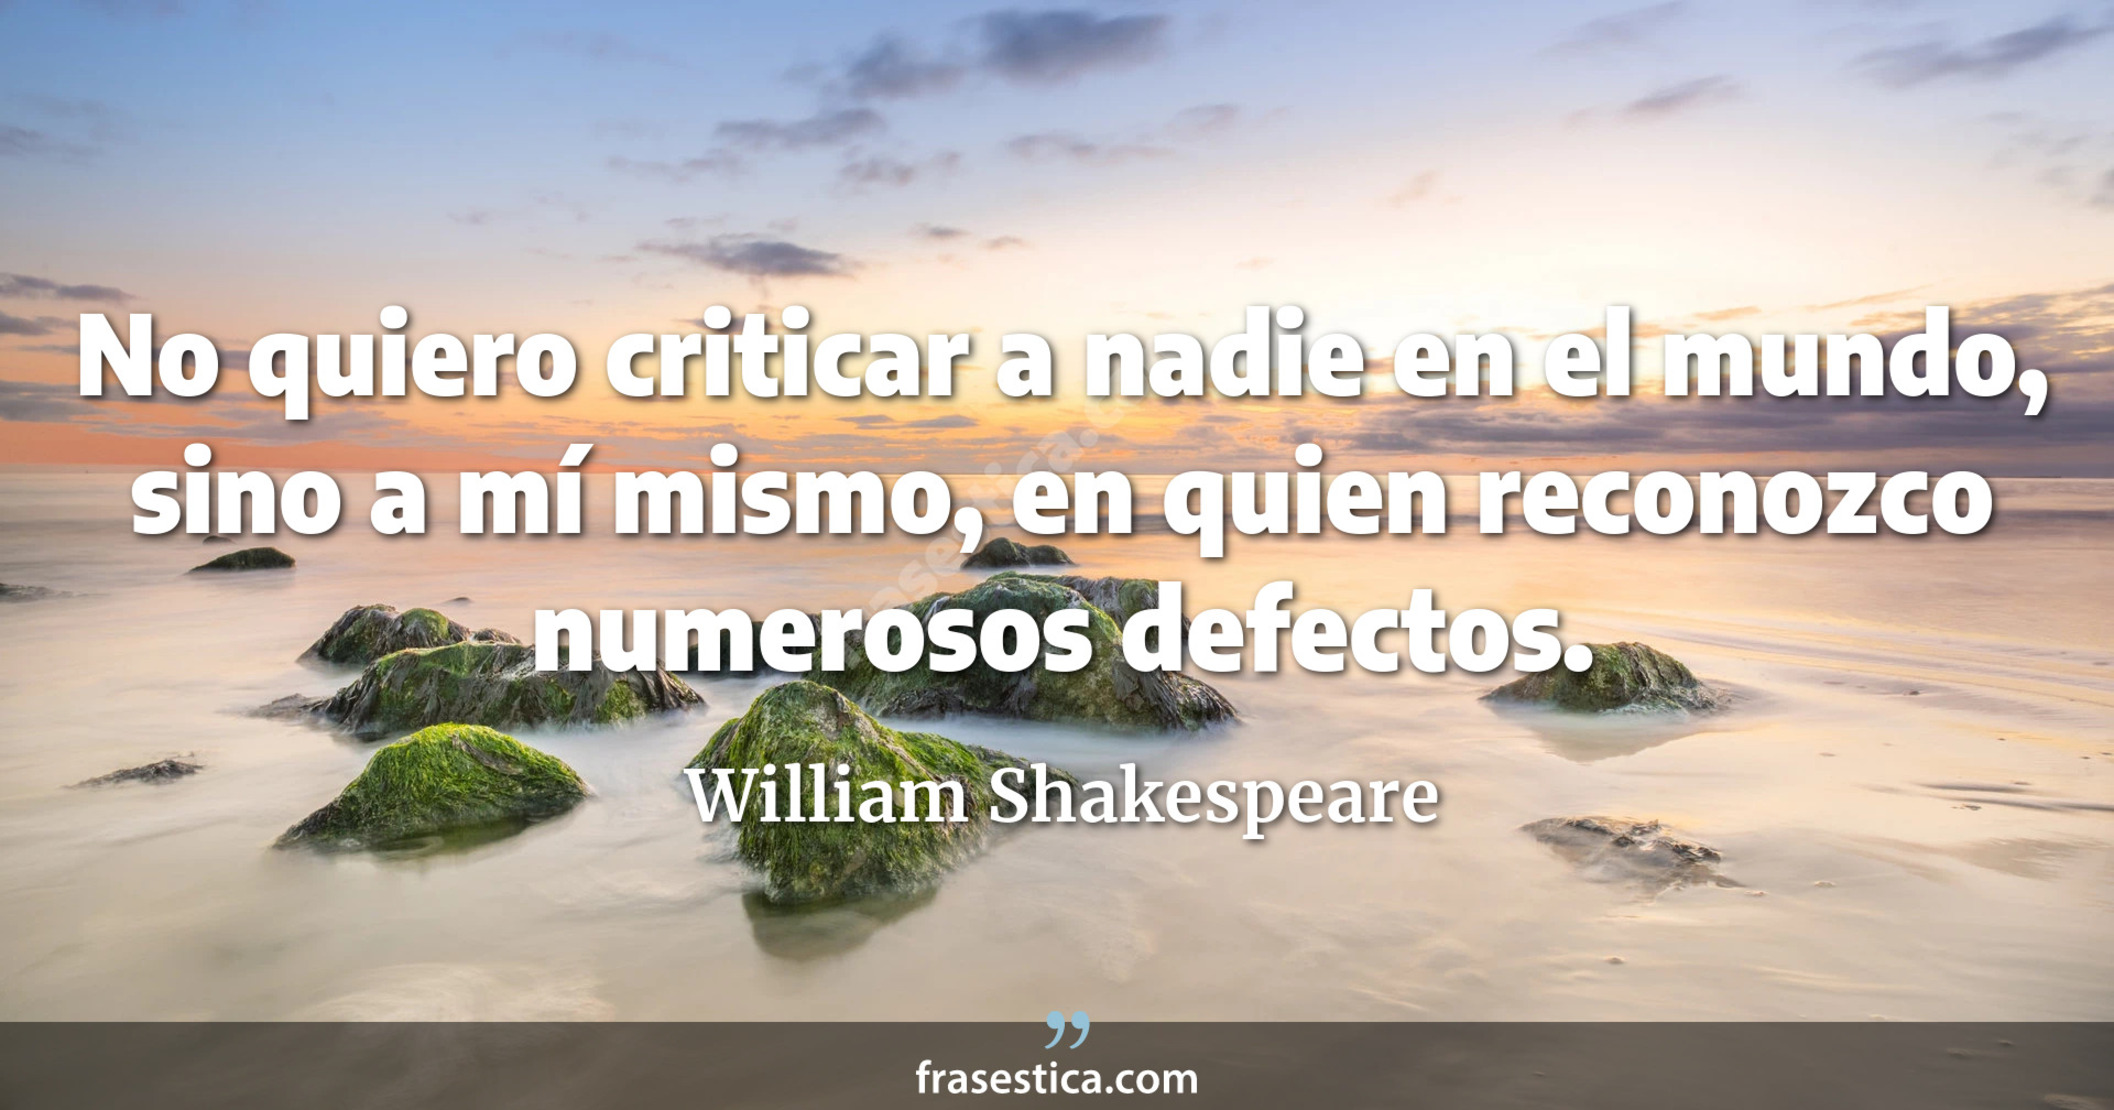 No quiero criticar a nadie en el mundo, sino a mí mismo, en quien reconozco numerosos defectos. - William Shakespeare